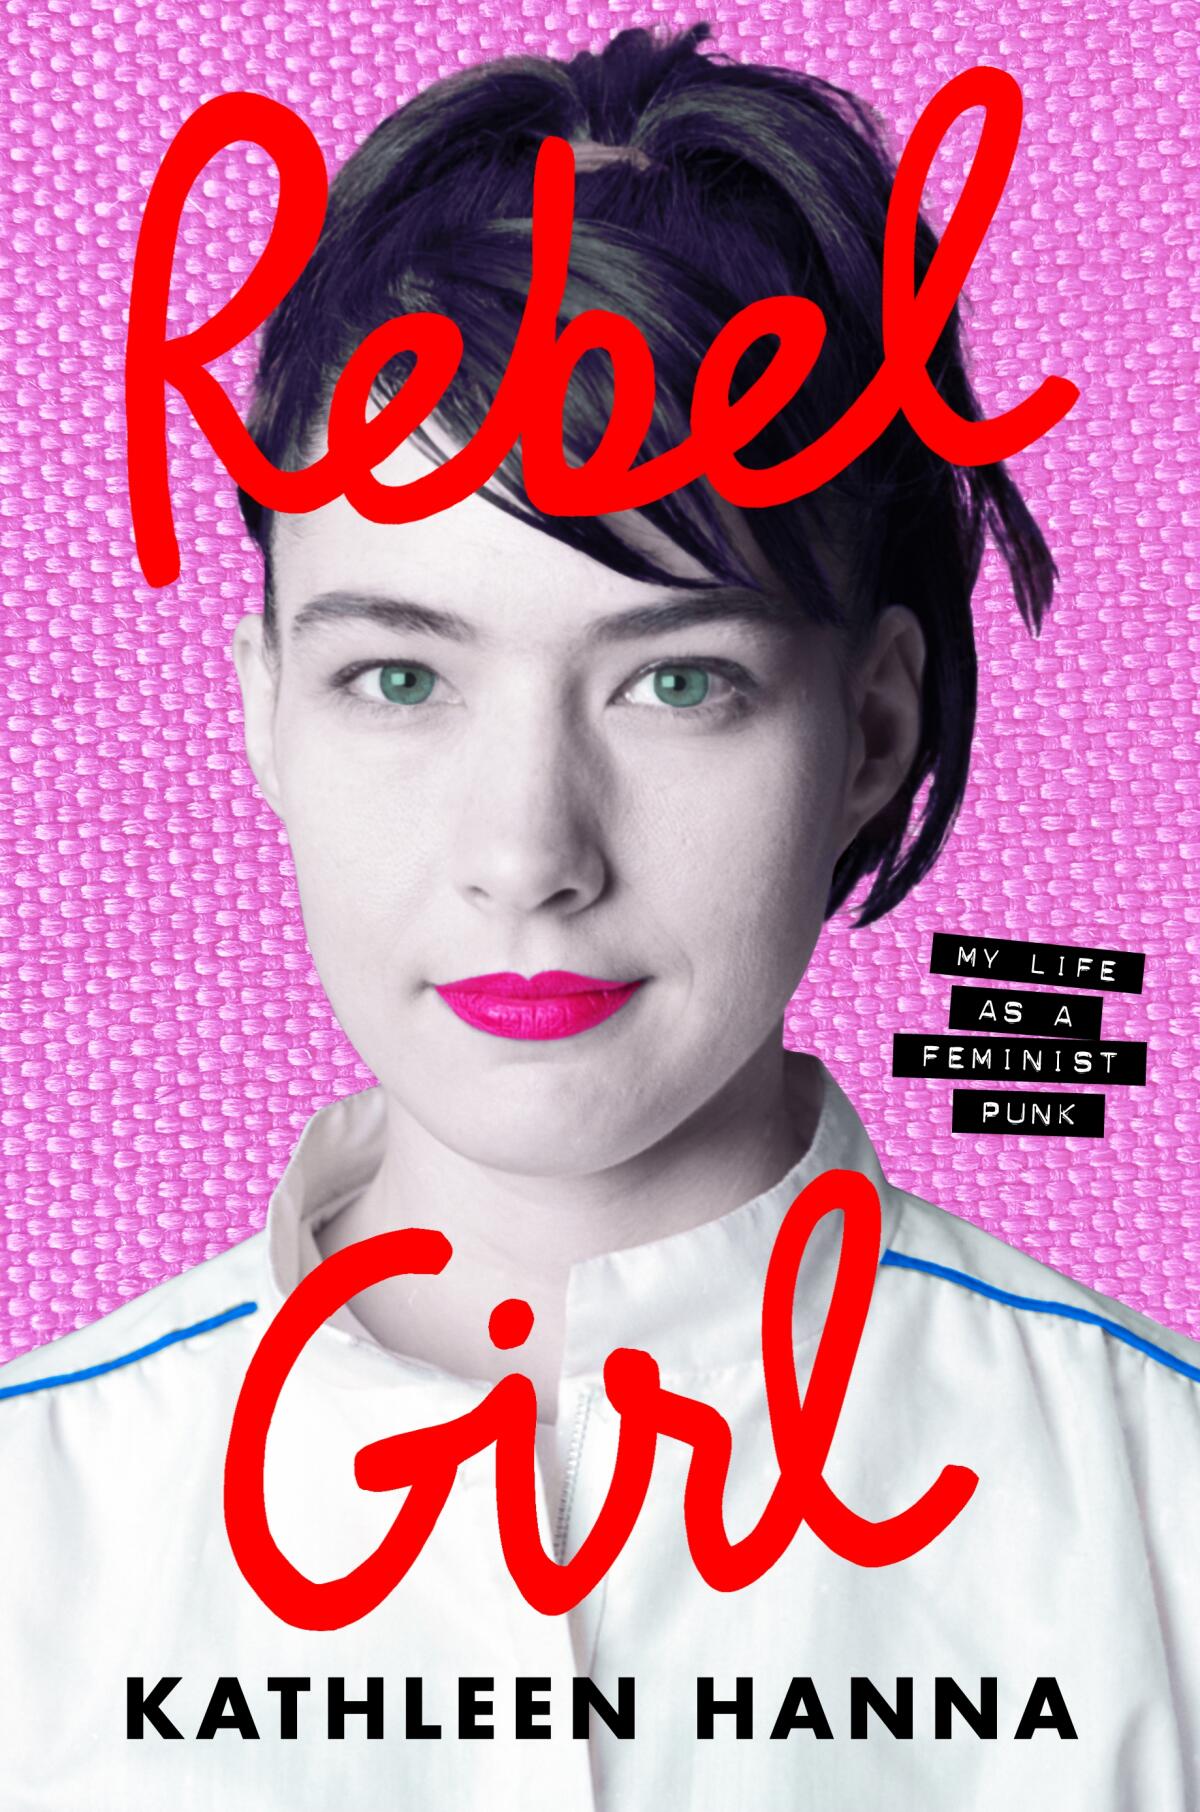 "Rebel Girl" by Kathleen Hanna